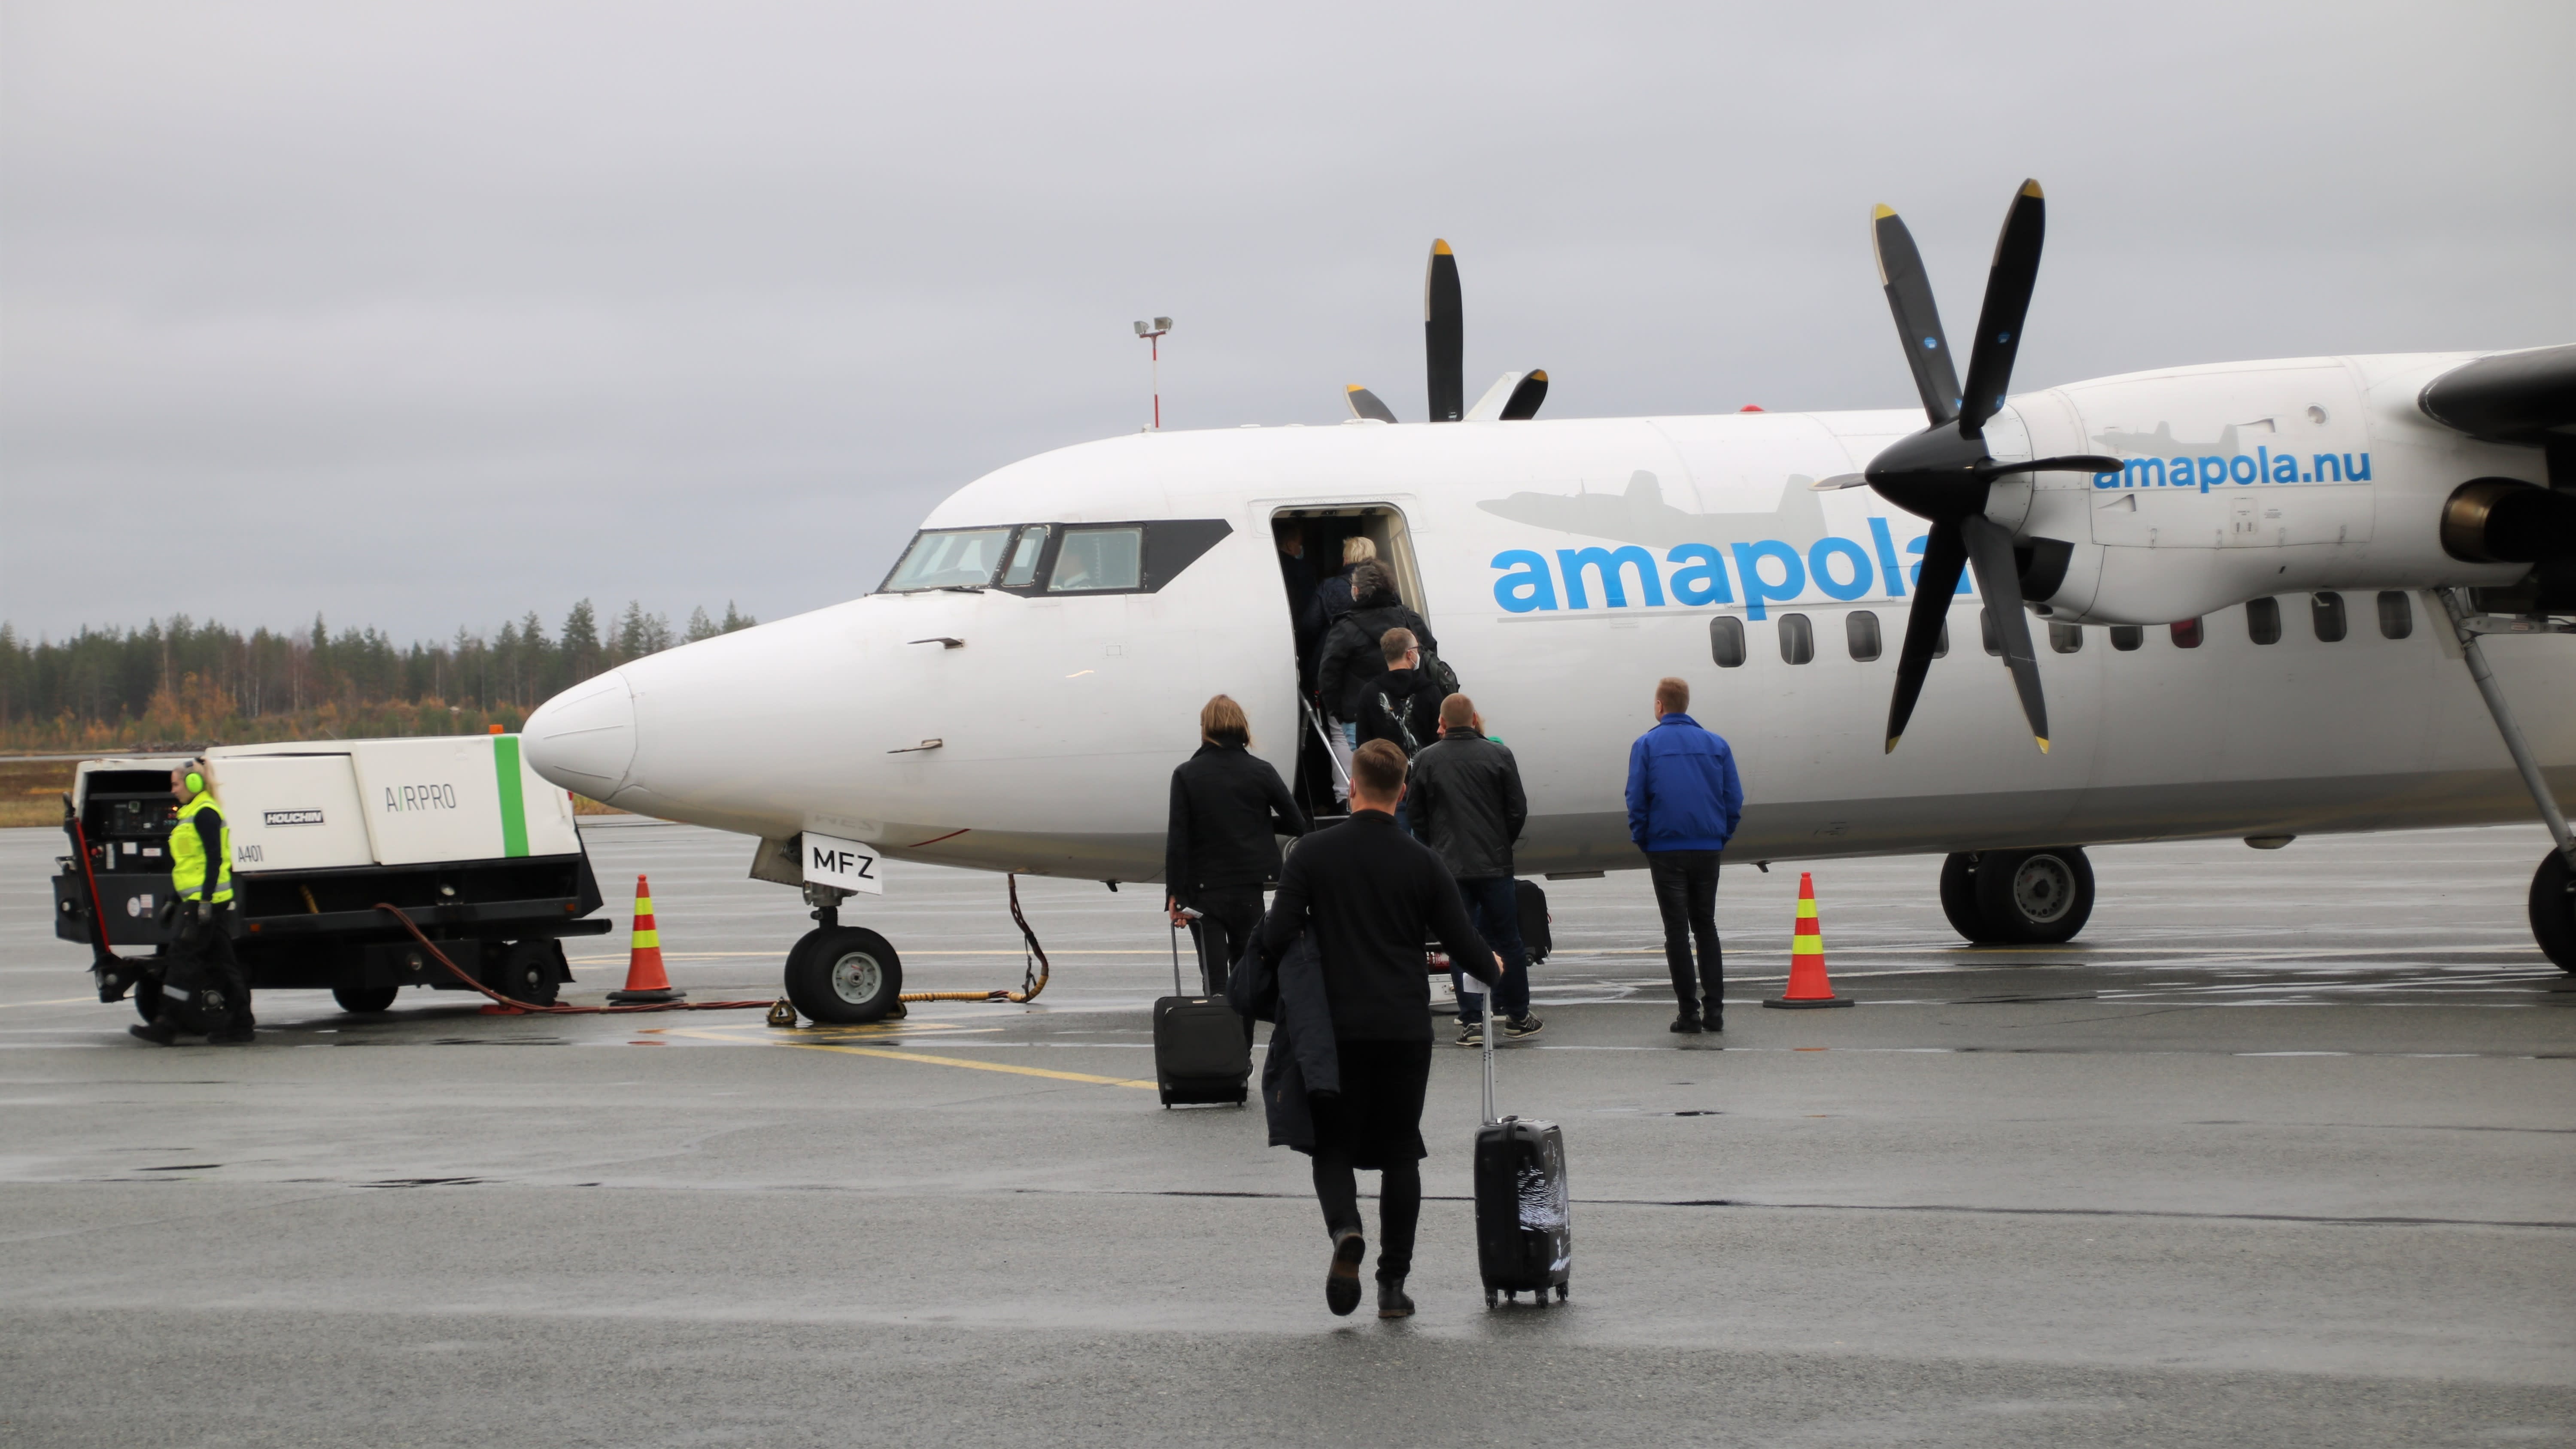 Der Wachmann untersucht den Startunfall am Flughafen Helsinki-Vantaa